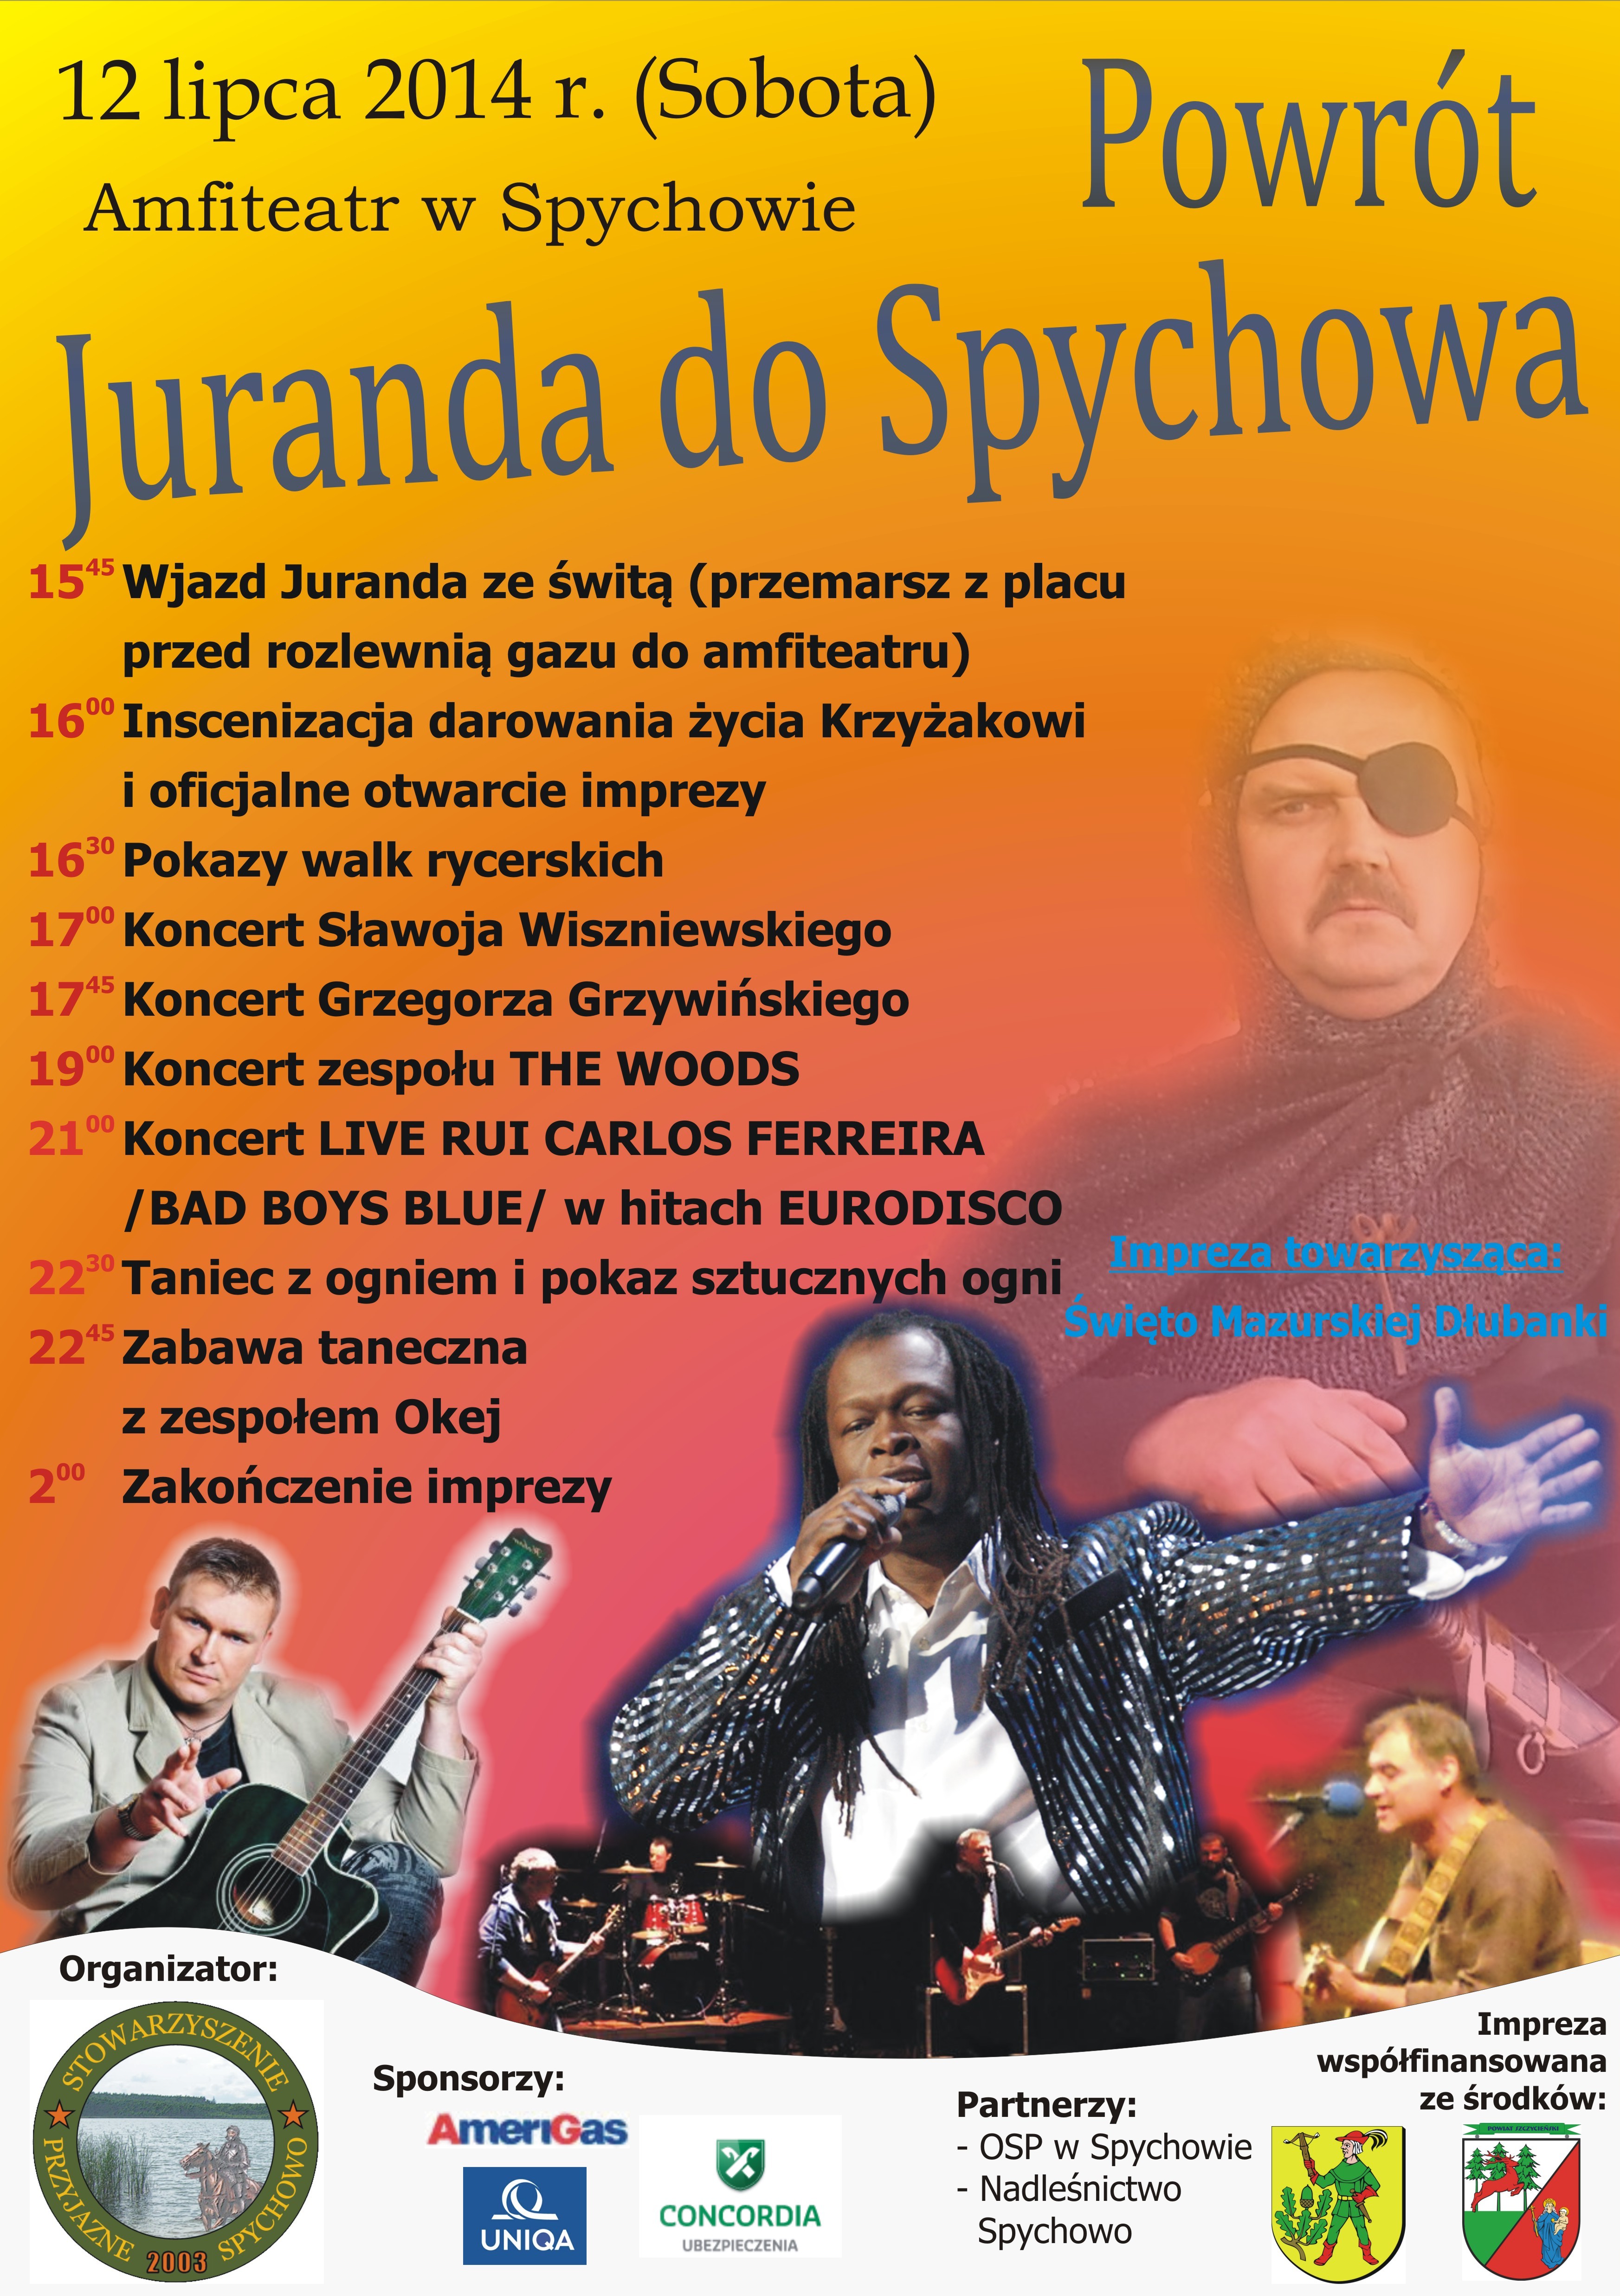 Powrót Juranda do Spychowa 2014